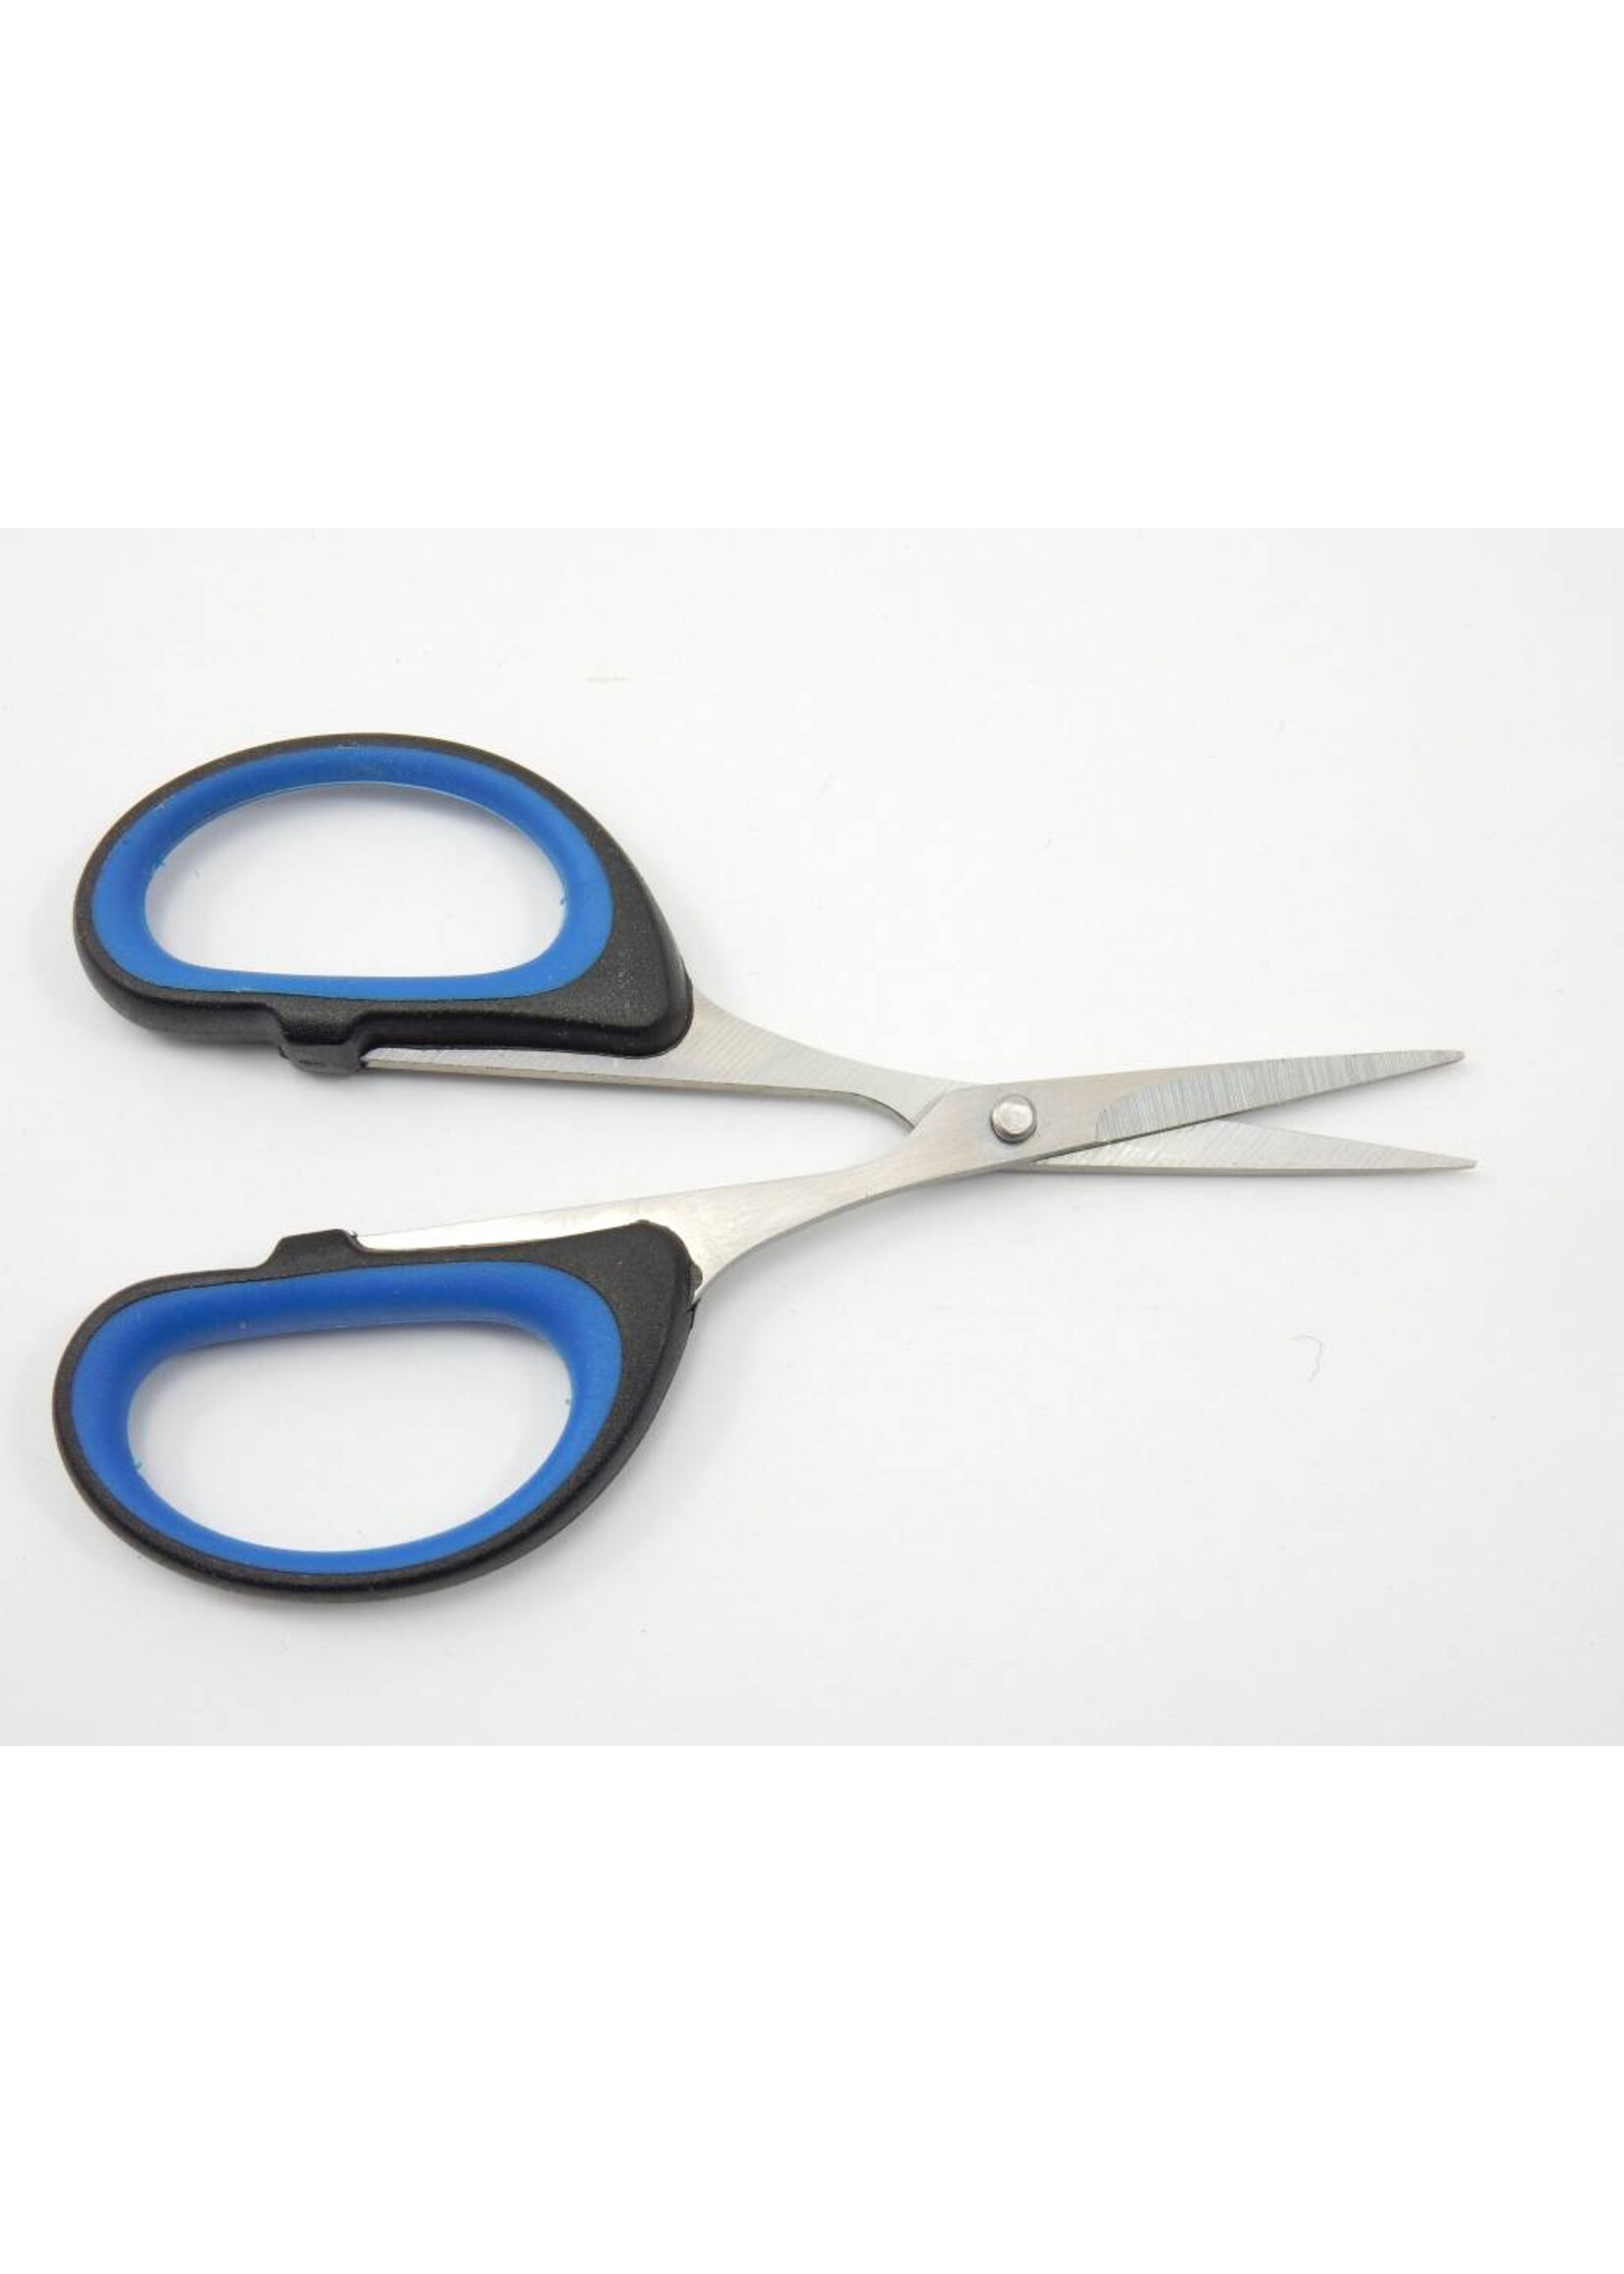 Scissors (Tiny)